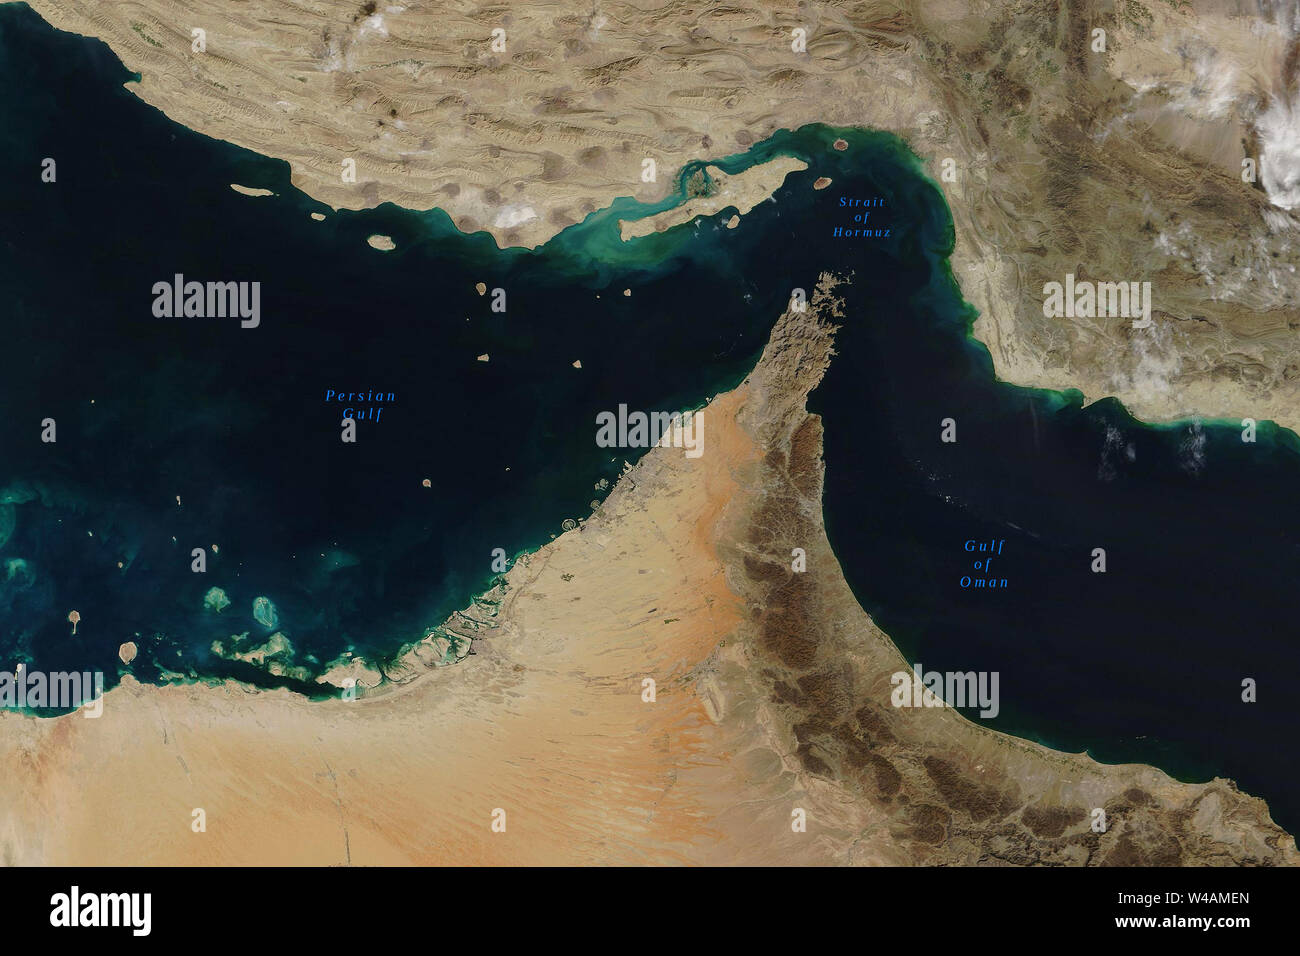 Stretto di Hormuz, un stretto tra il Golfo Persico e il Golfo di Oman, visto dallo spazio - Elementi di questa immagine fornita dalla NASA Foto Stock